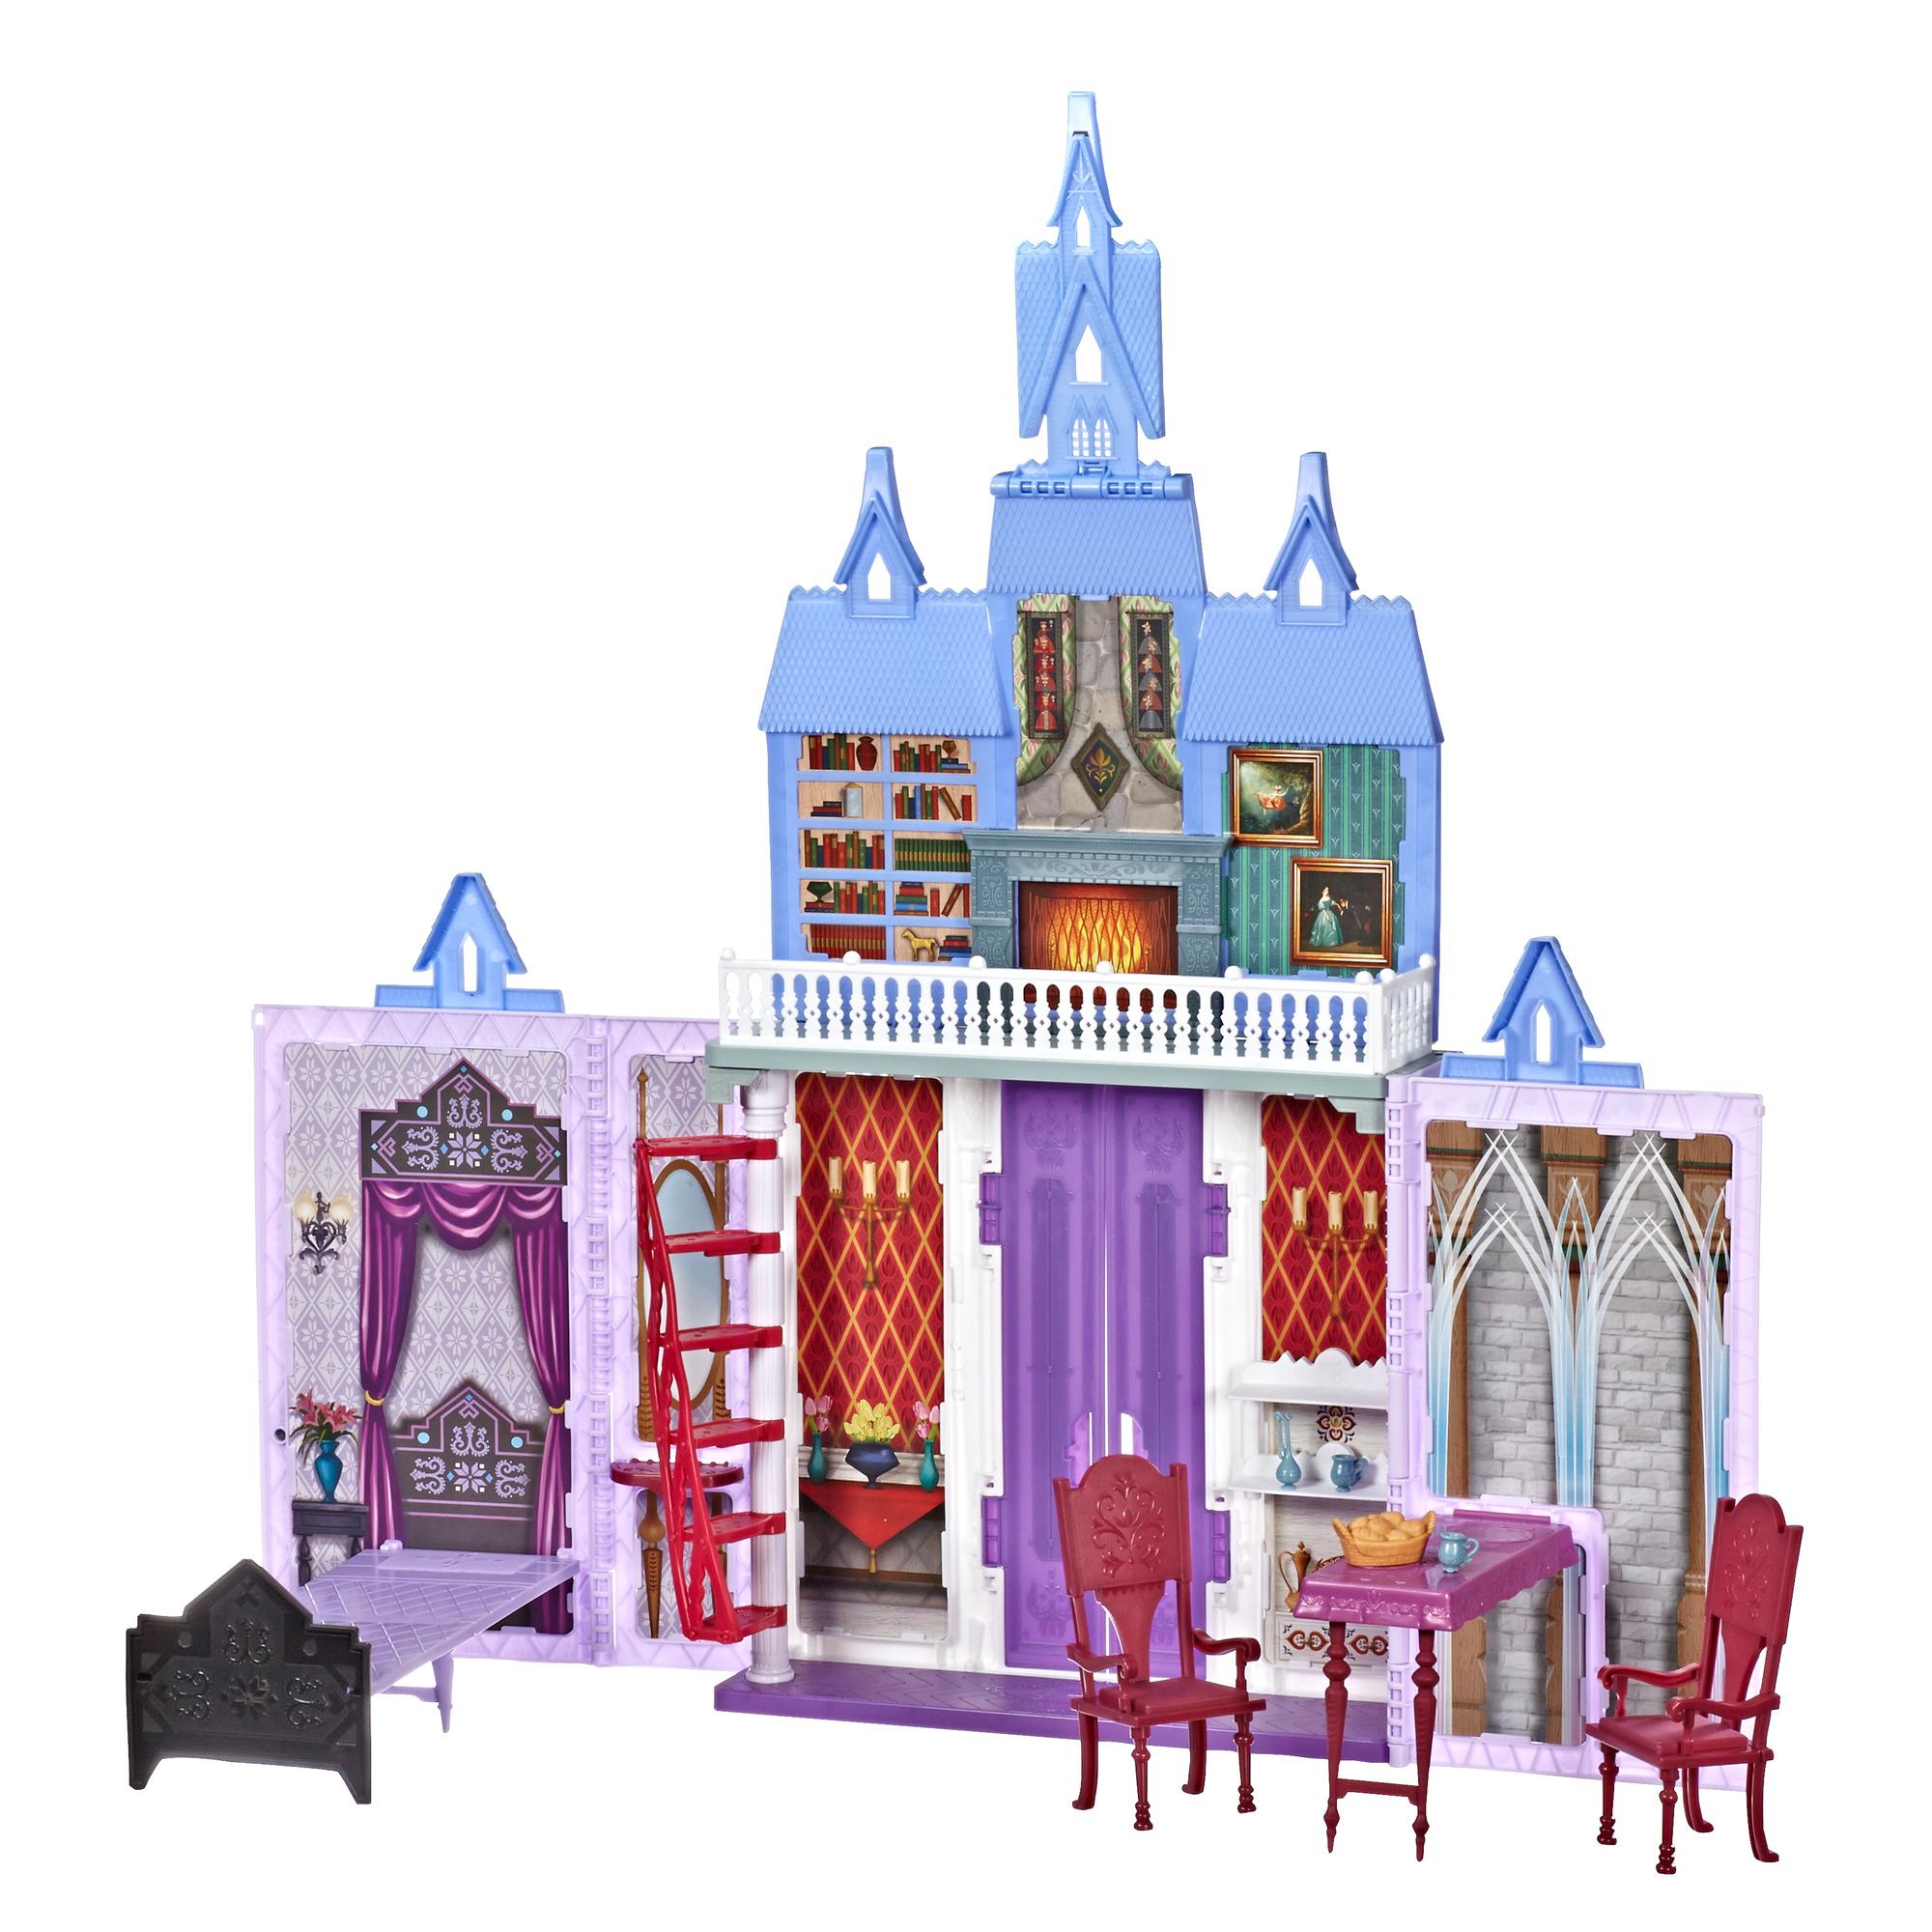 Disney La Reine des Neiges 2 - Château d'Arendelle, inspiré de La Reine des neiges 2 de Disney, jouet à transporter pour enfants, à partir de 3 ans